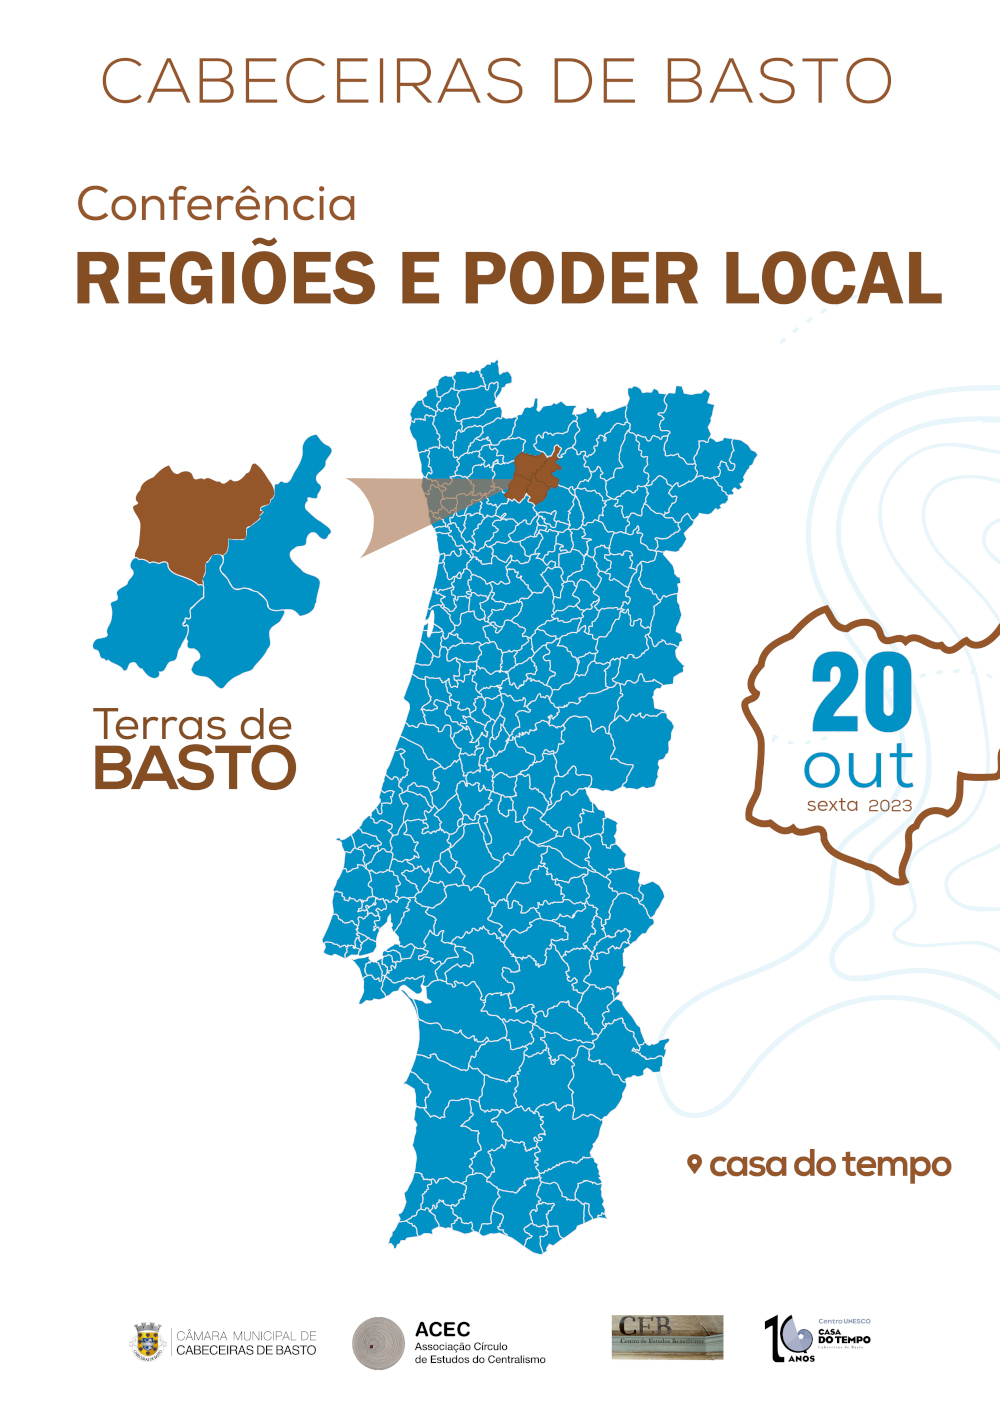 Cabeceiras de Basto debate «Regiões e Poder Local» em conferência a 20 de outubro